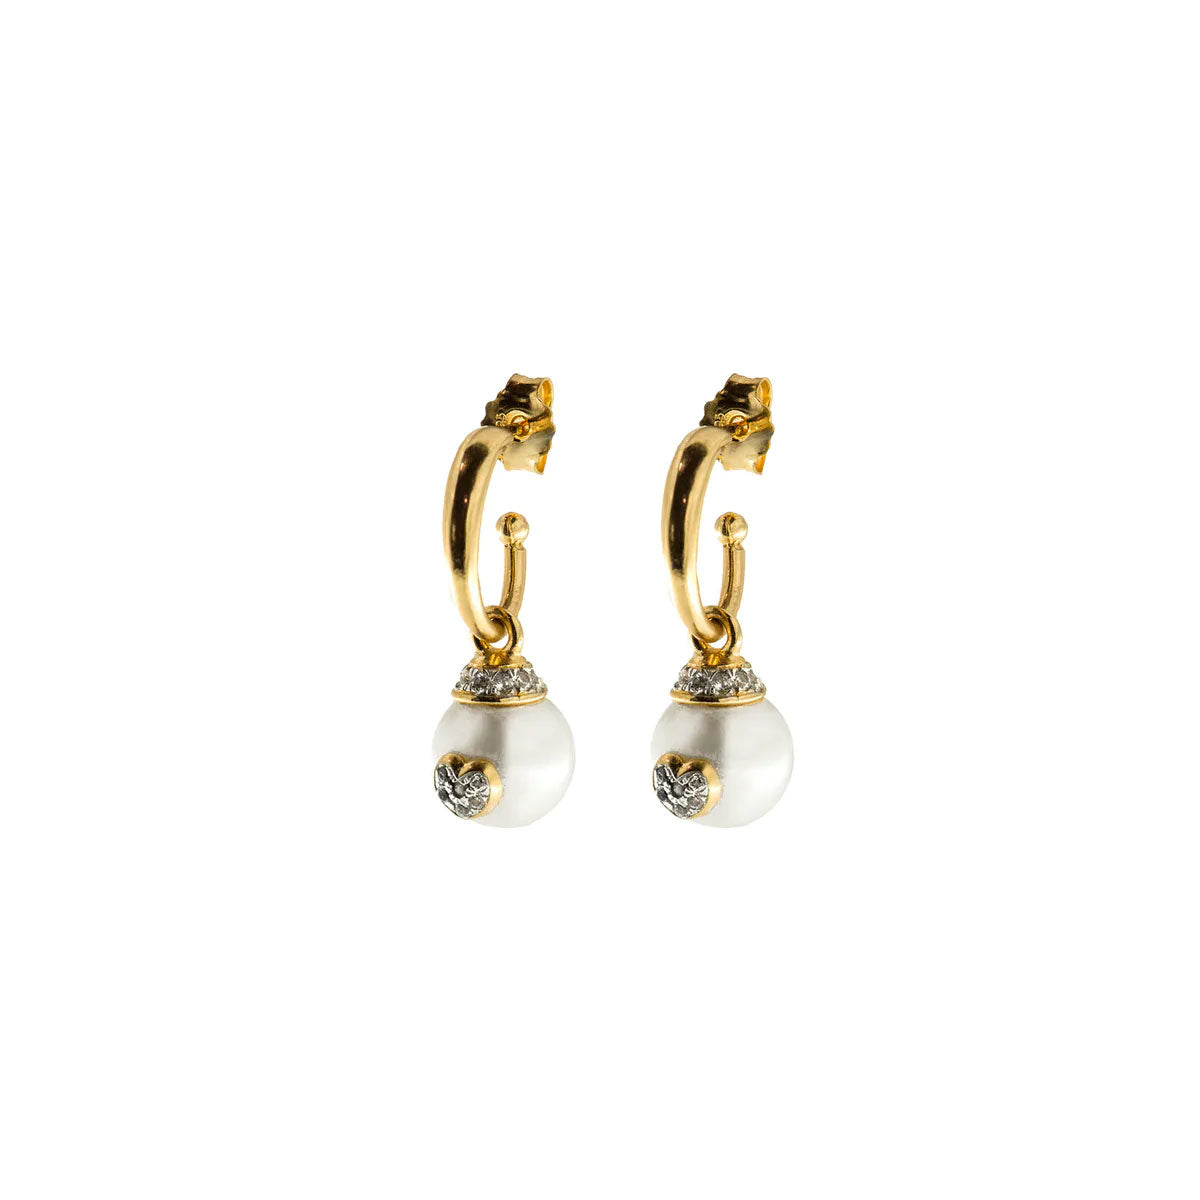 Orecchini pendenti in argento 925 e finitura in oro giallo 18kt con Perle bianche di piccole dimensioni. Le perle pendenti hanno un diametro di 1 cm. Cuori al centro della perla composti da un pavé di zirconi bianchi. Chiusura con la farfallina.